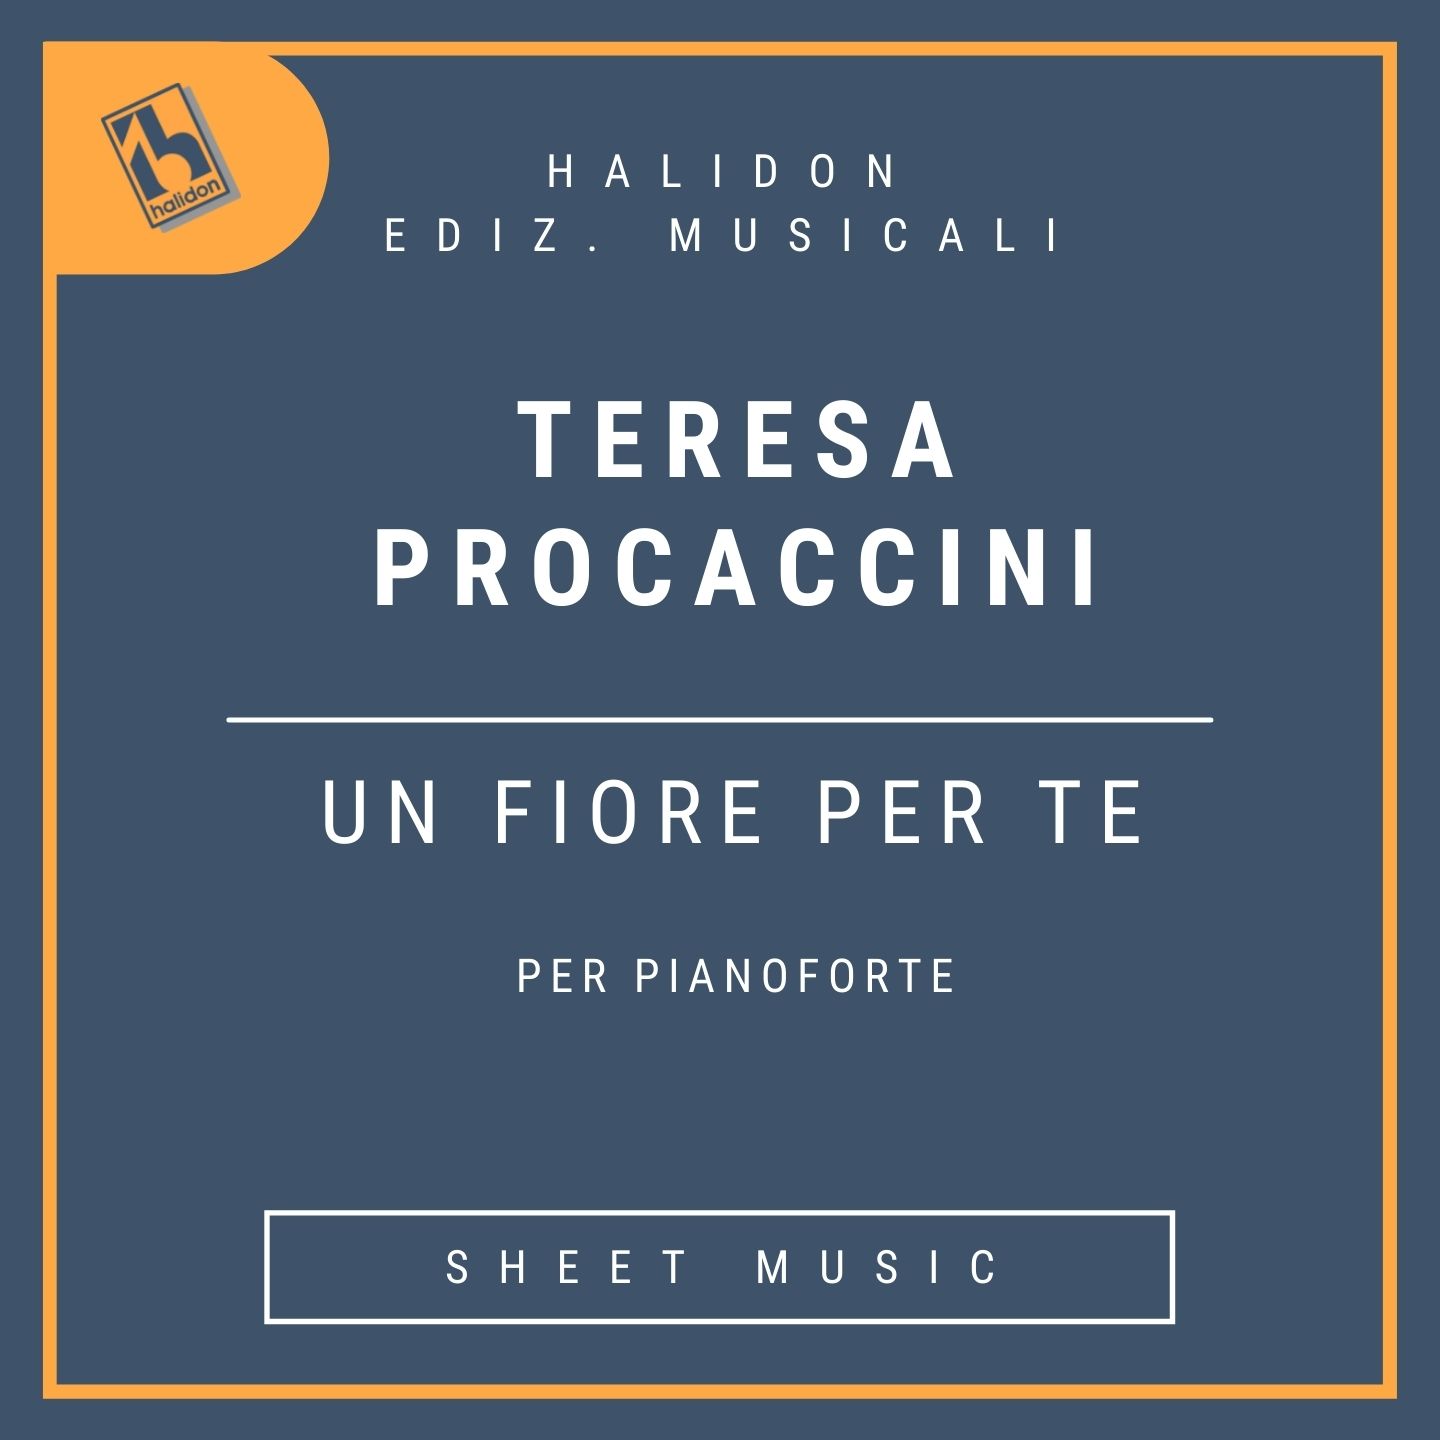 Teresa Procaccini - Un fiore per te